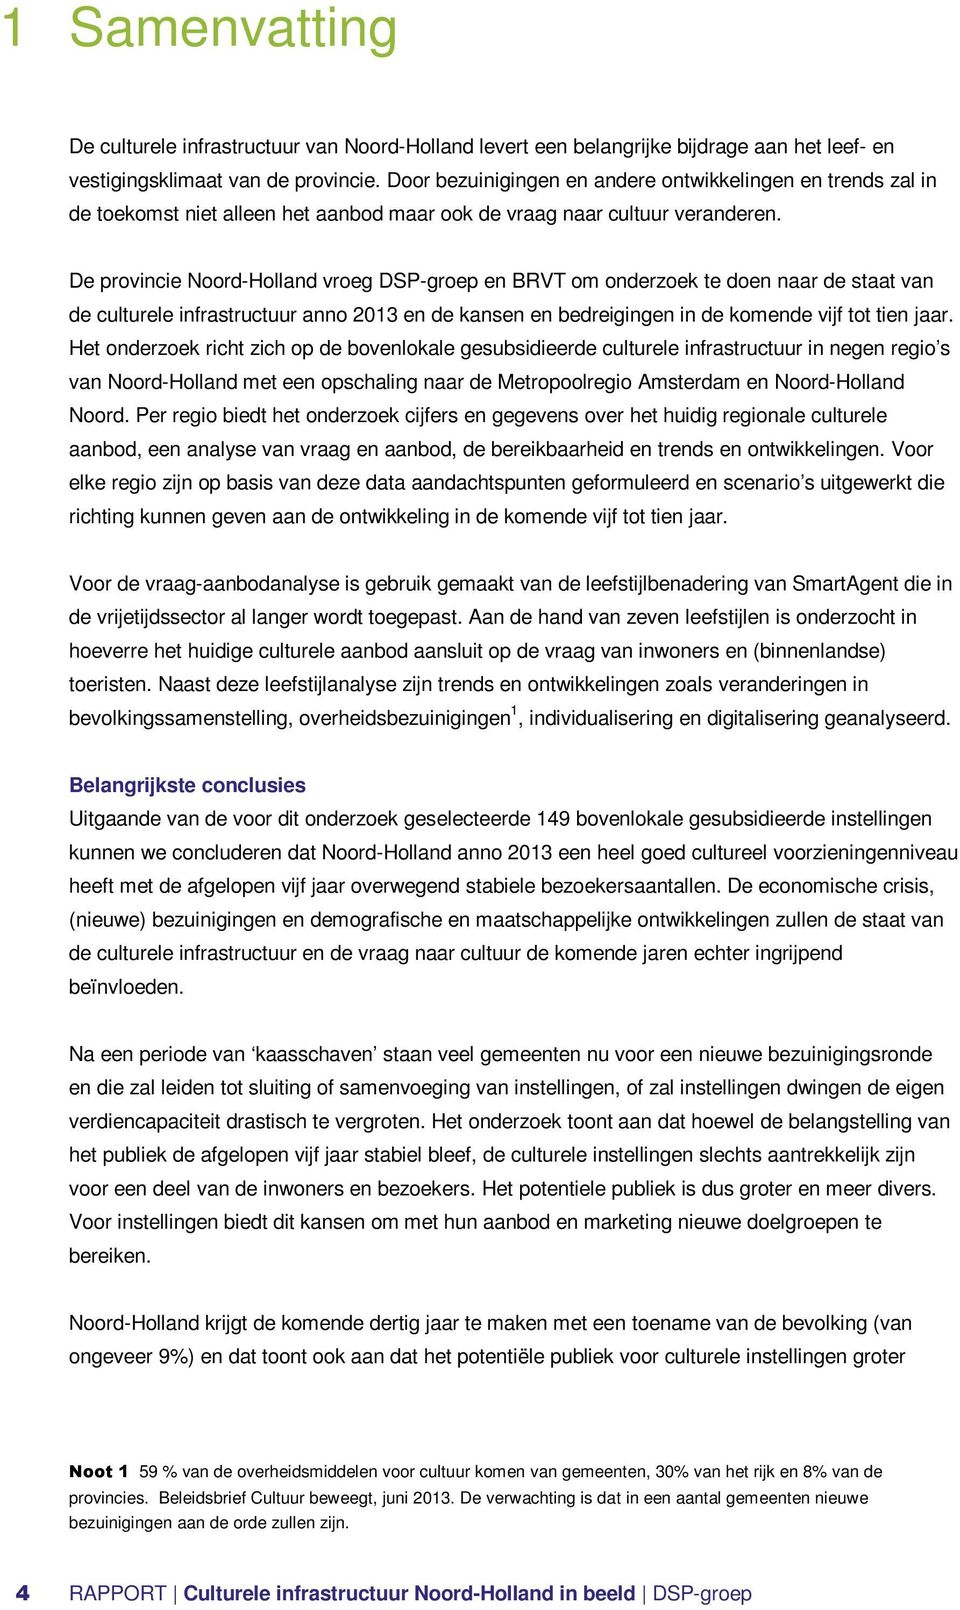 De provincie Noord-Holland vroeg DSP-groep en BRVT om onderzoek te doen naar de staat van de culturele infrastructuur anno 2013 en de kansen en bedreigingen in de komende vijf tot tien jaar.